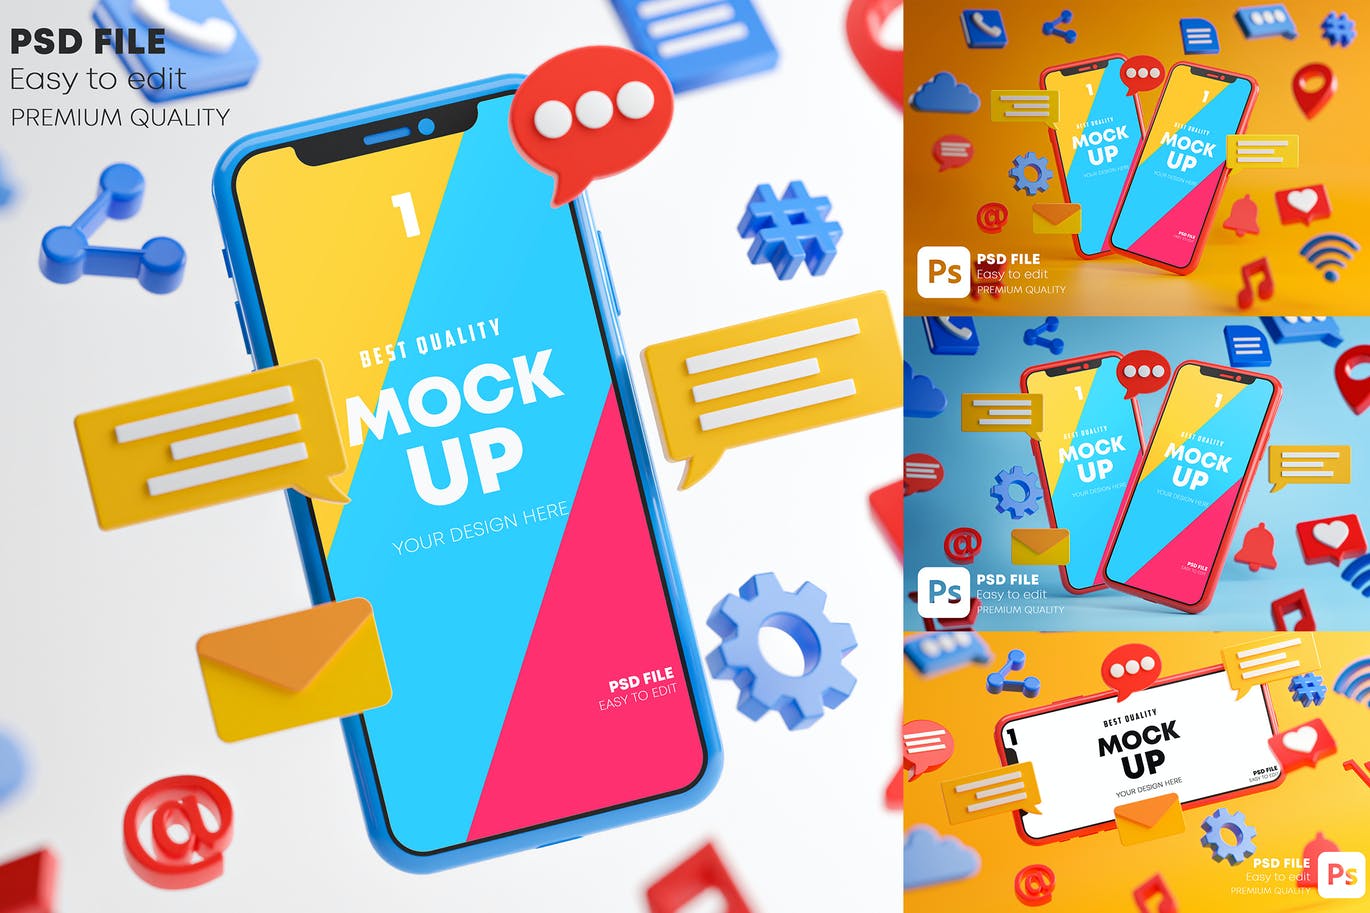 智能手机社交媒体图标元素样机素材包 Social Media Icons Smartphone Mockup Pack设计素材模板